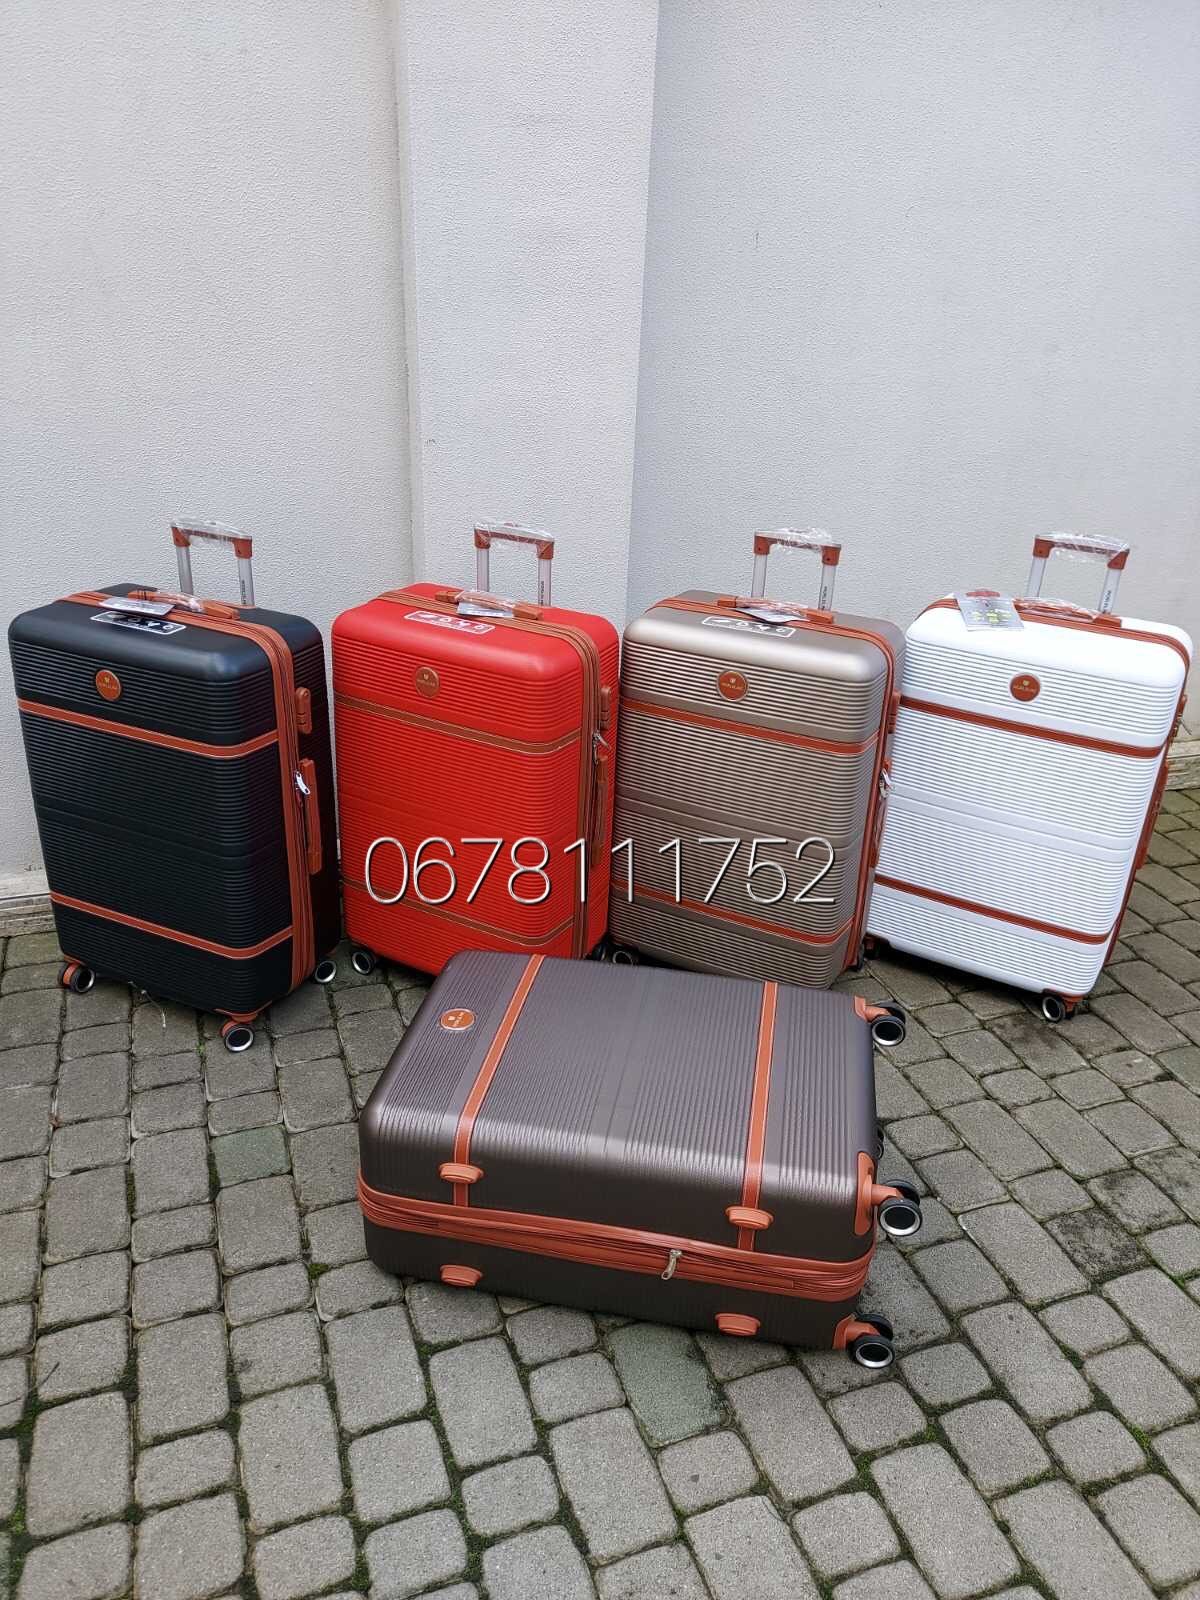 NEW від AIRTEX WORDLINE 629 Франція валізи чемоданы сумки на колесах